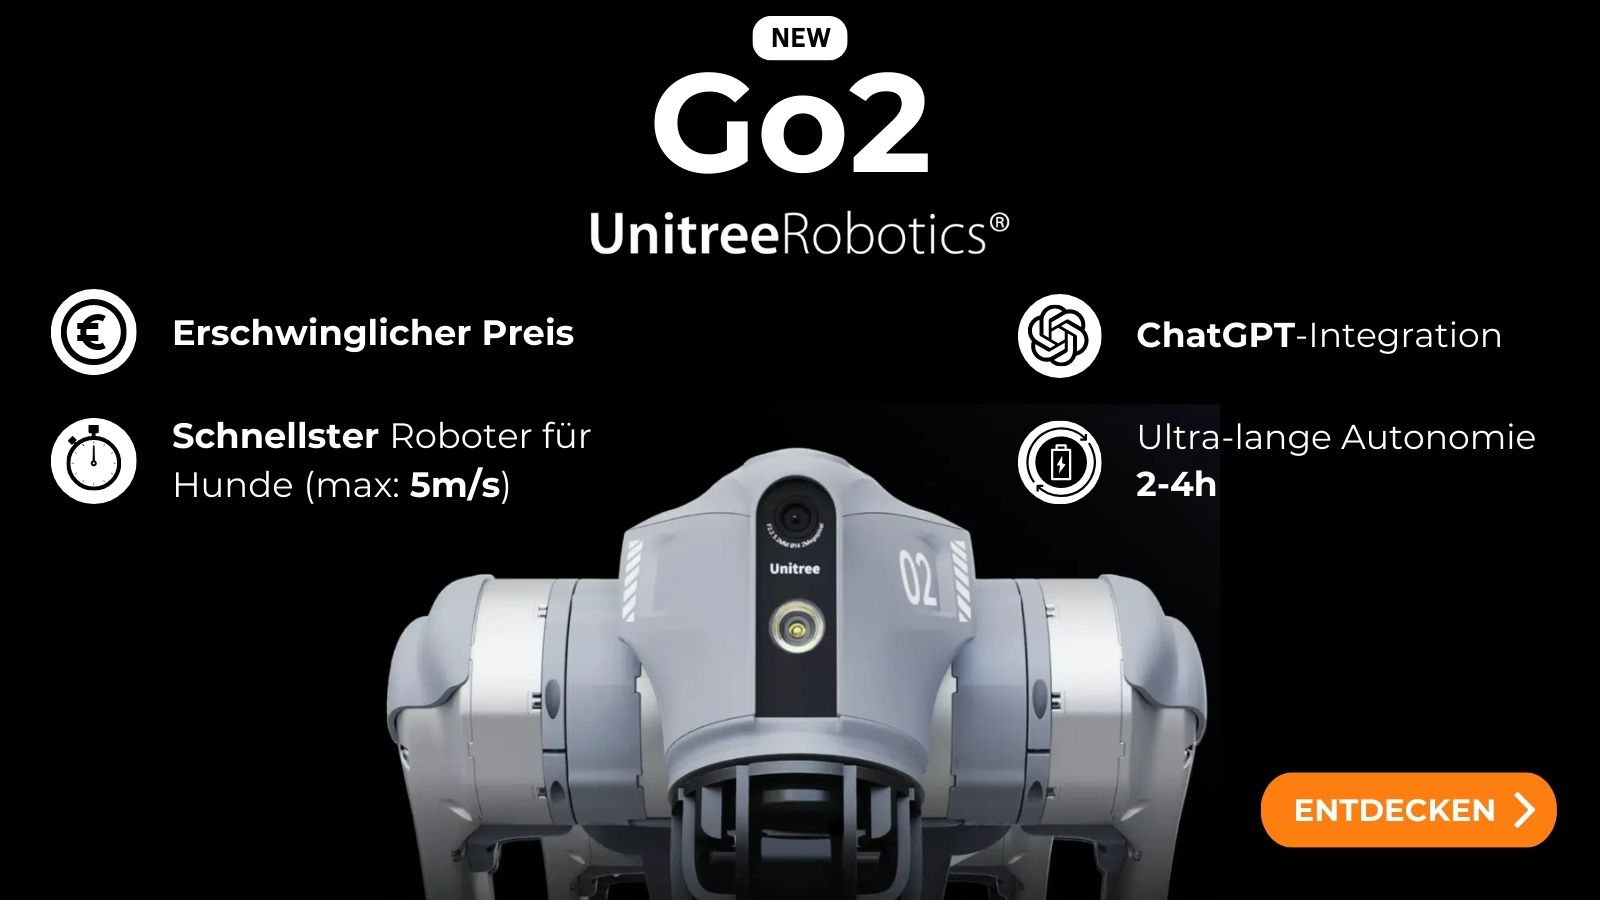 Go2 Unitree Robotics